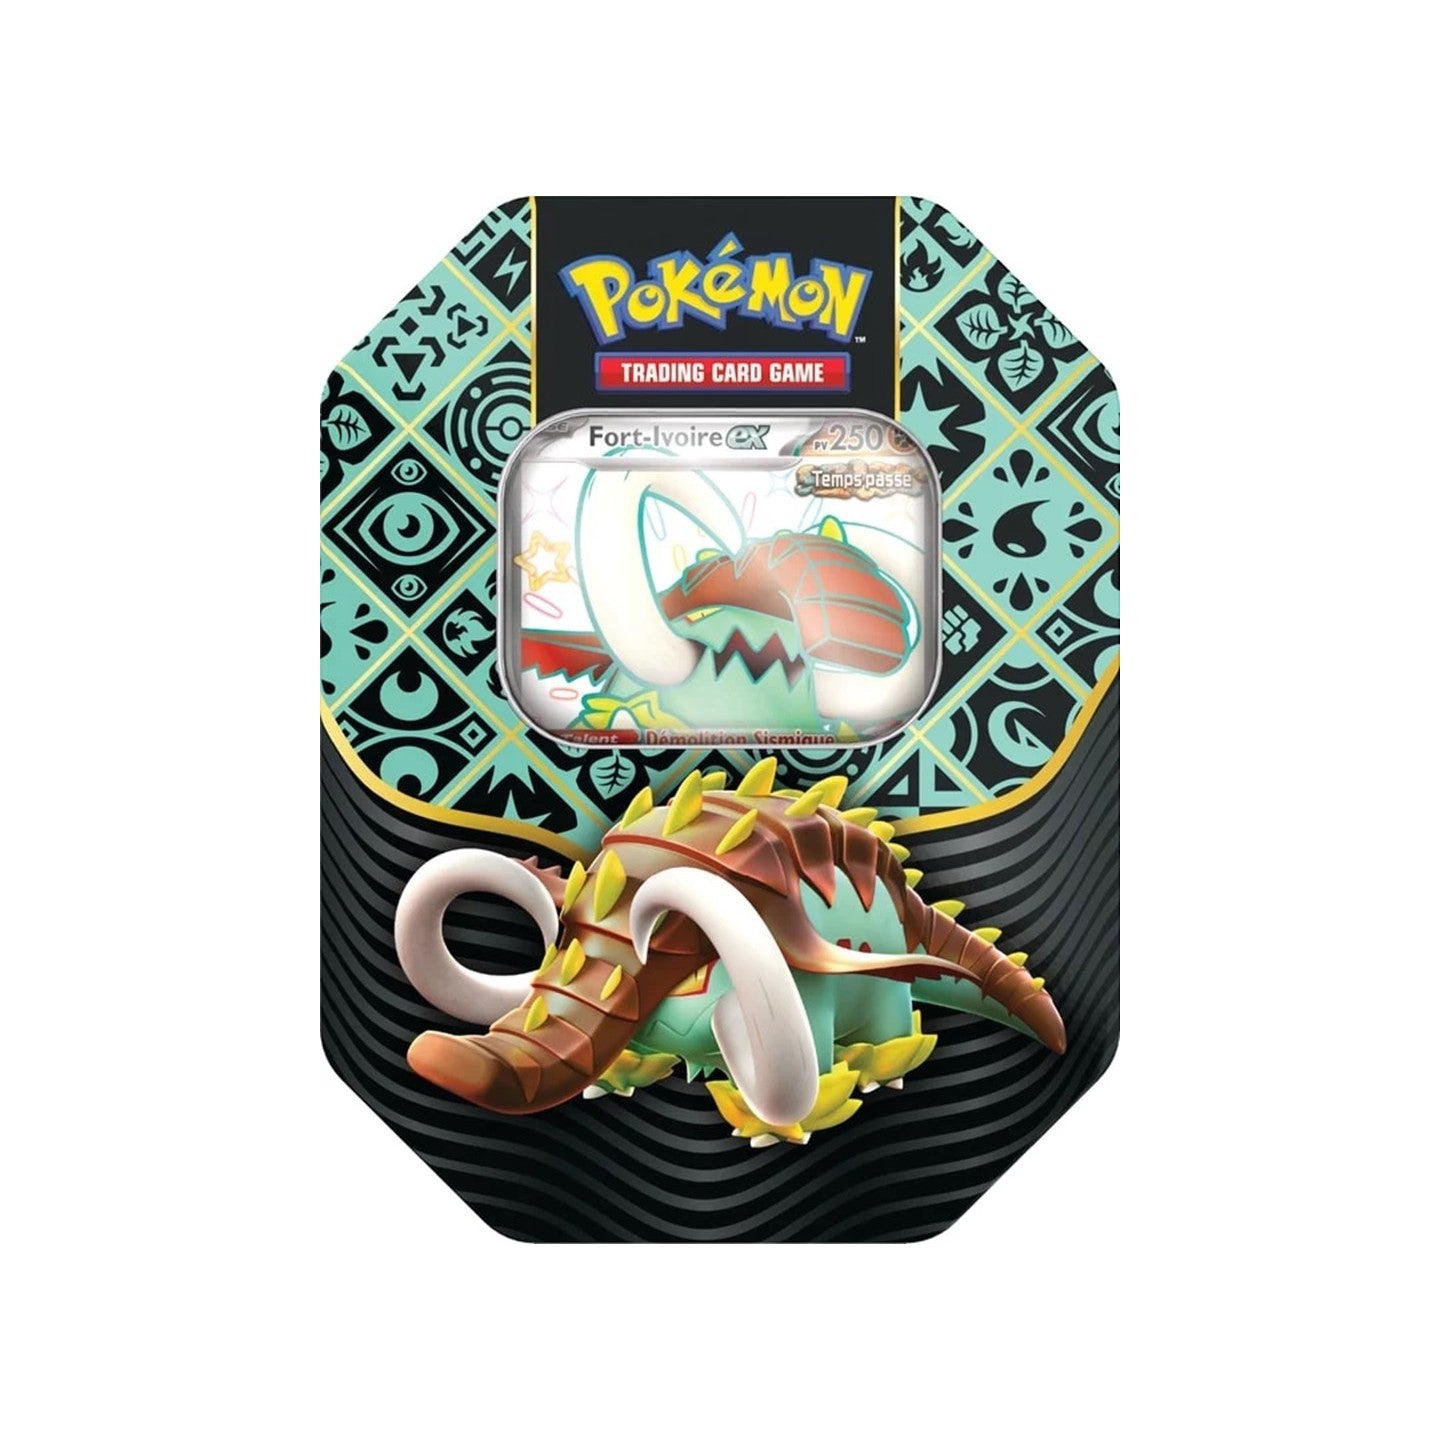 Pokémon Lot 3 Pokébox EV04.5 Destinées de Paldea : Fort-Ivoire ex